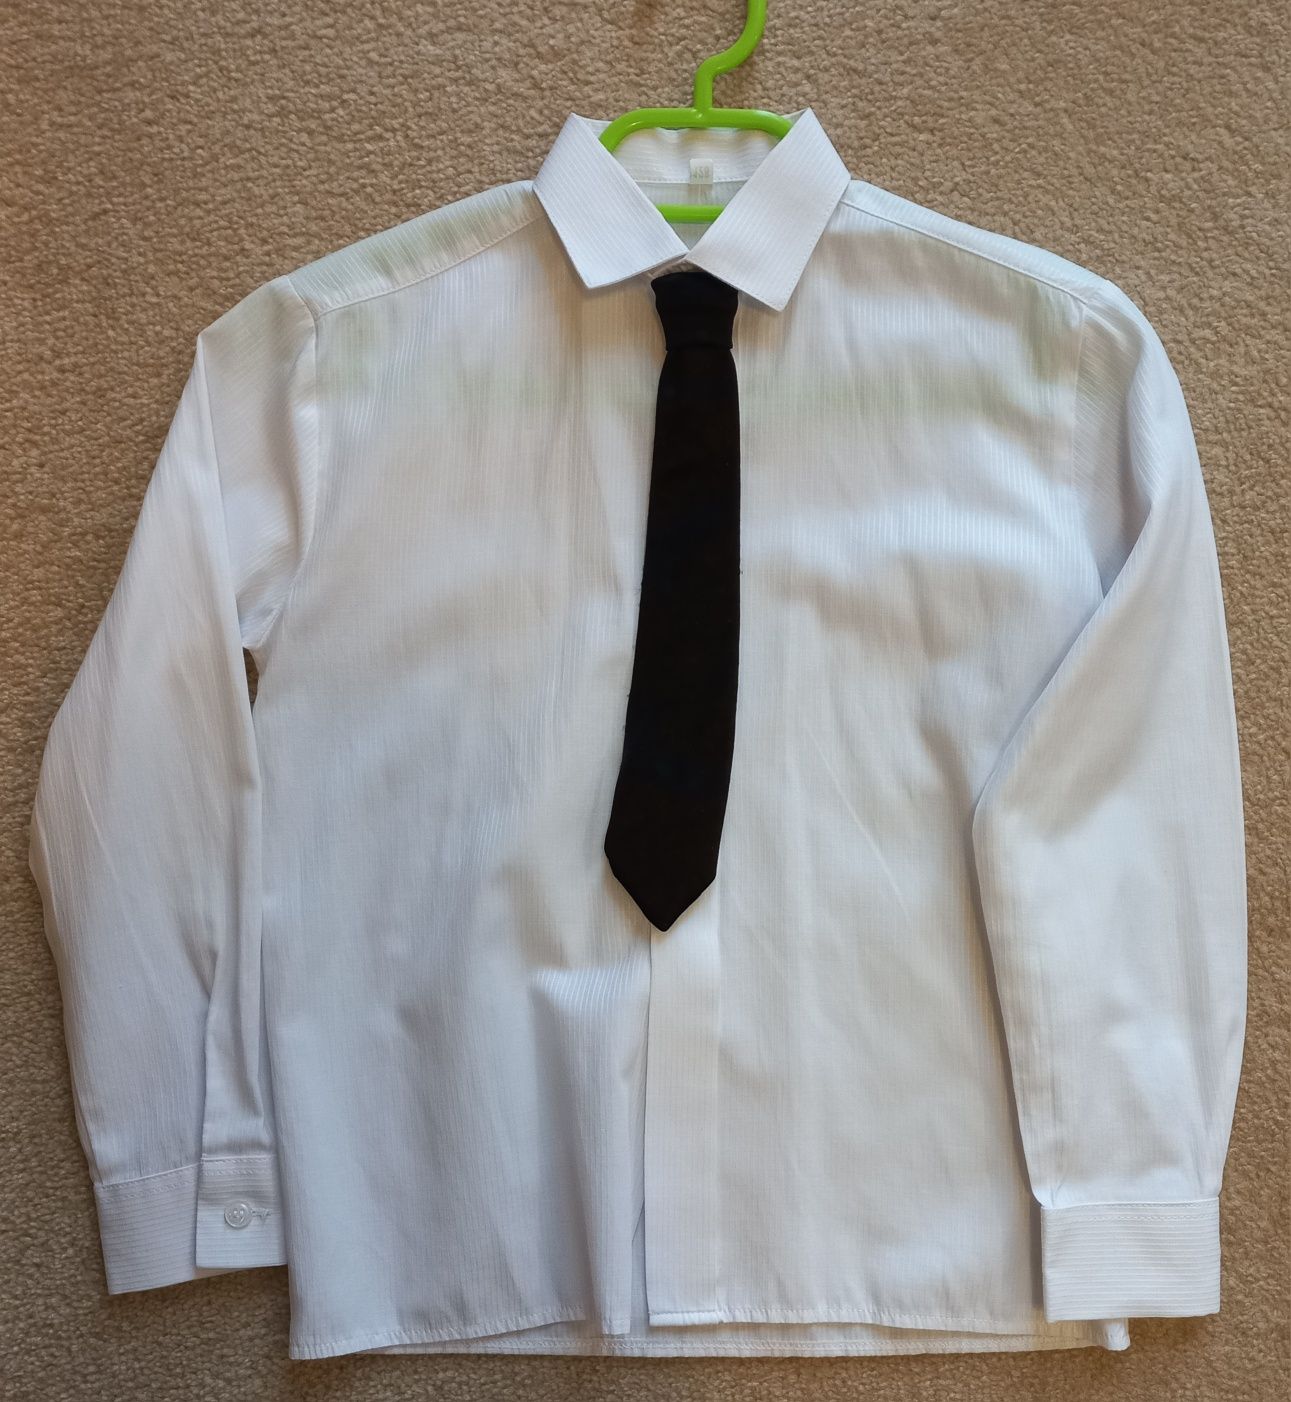 Koszula chłopięca biała 128cm z krawatem